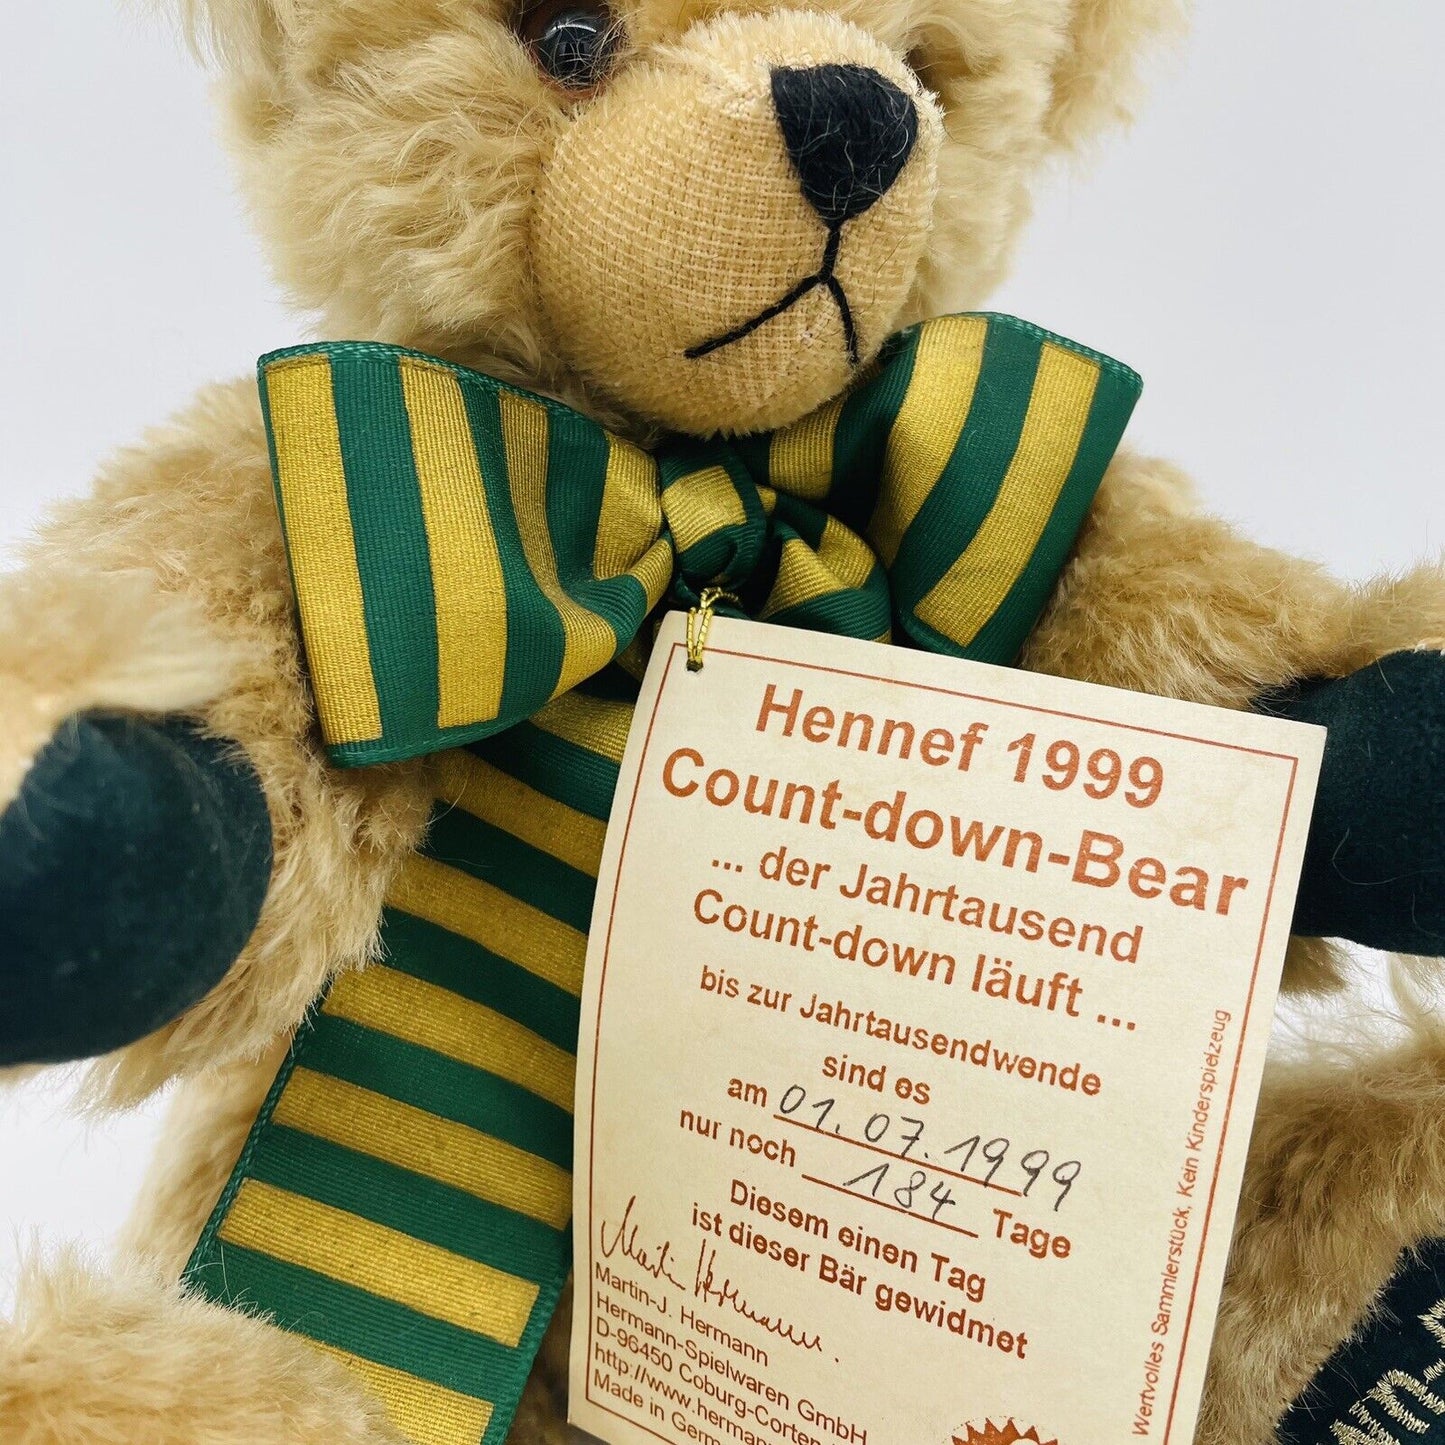 Hermann Coburg Count-down Teddybär Hennef 2000 limitiert auf 252 Tage